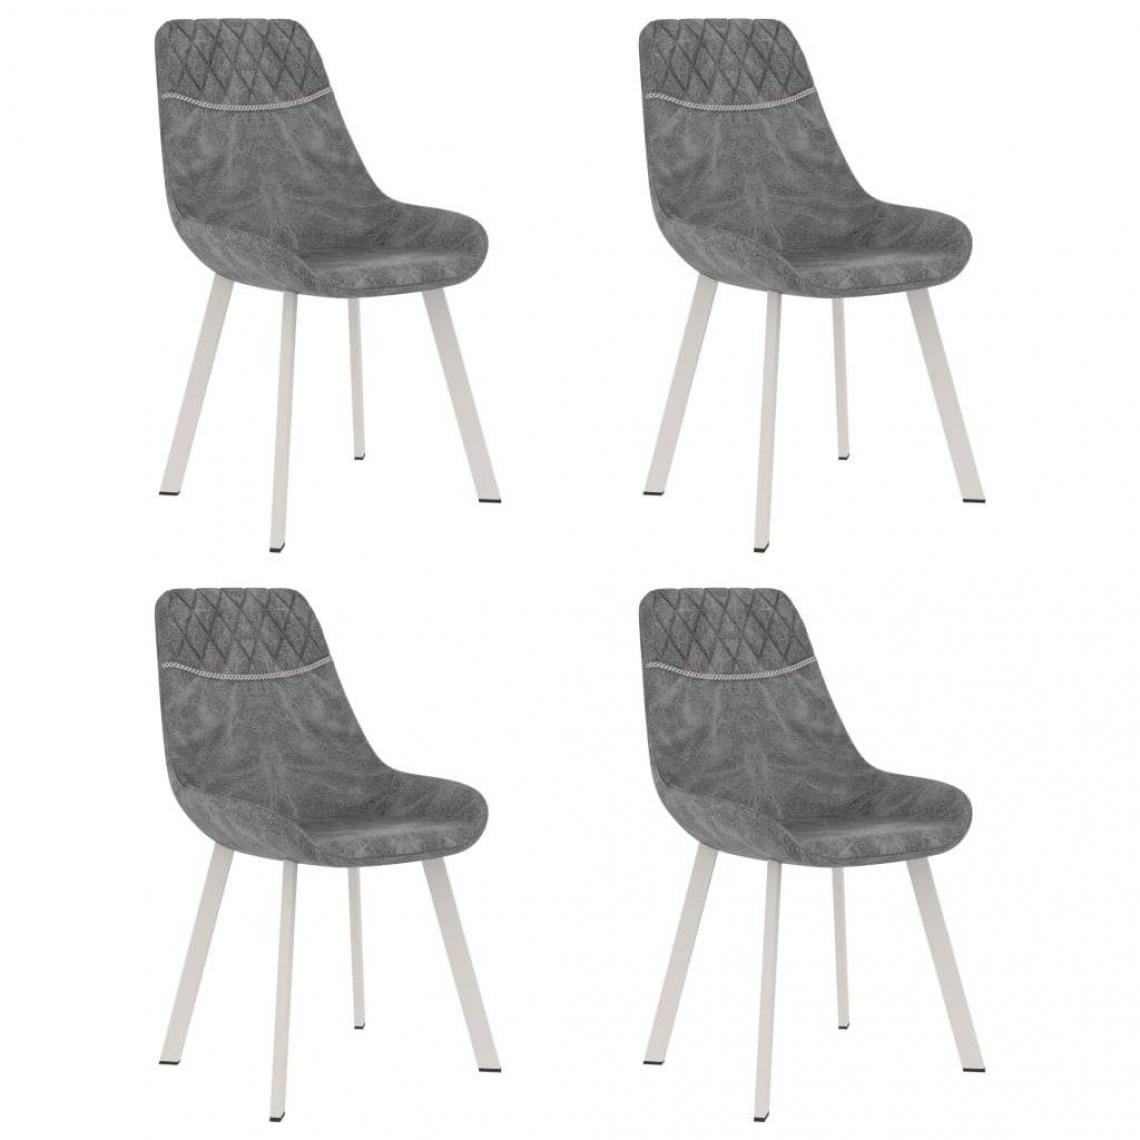 Decoshop26 - Lot de 4 chaises de salle à manger cuisine design moderne similicuir noir CDS021816 - Chaises